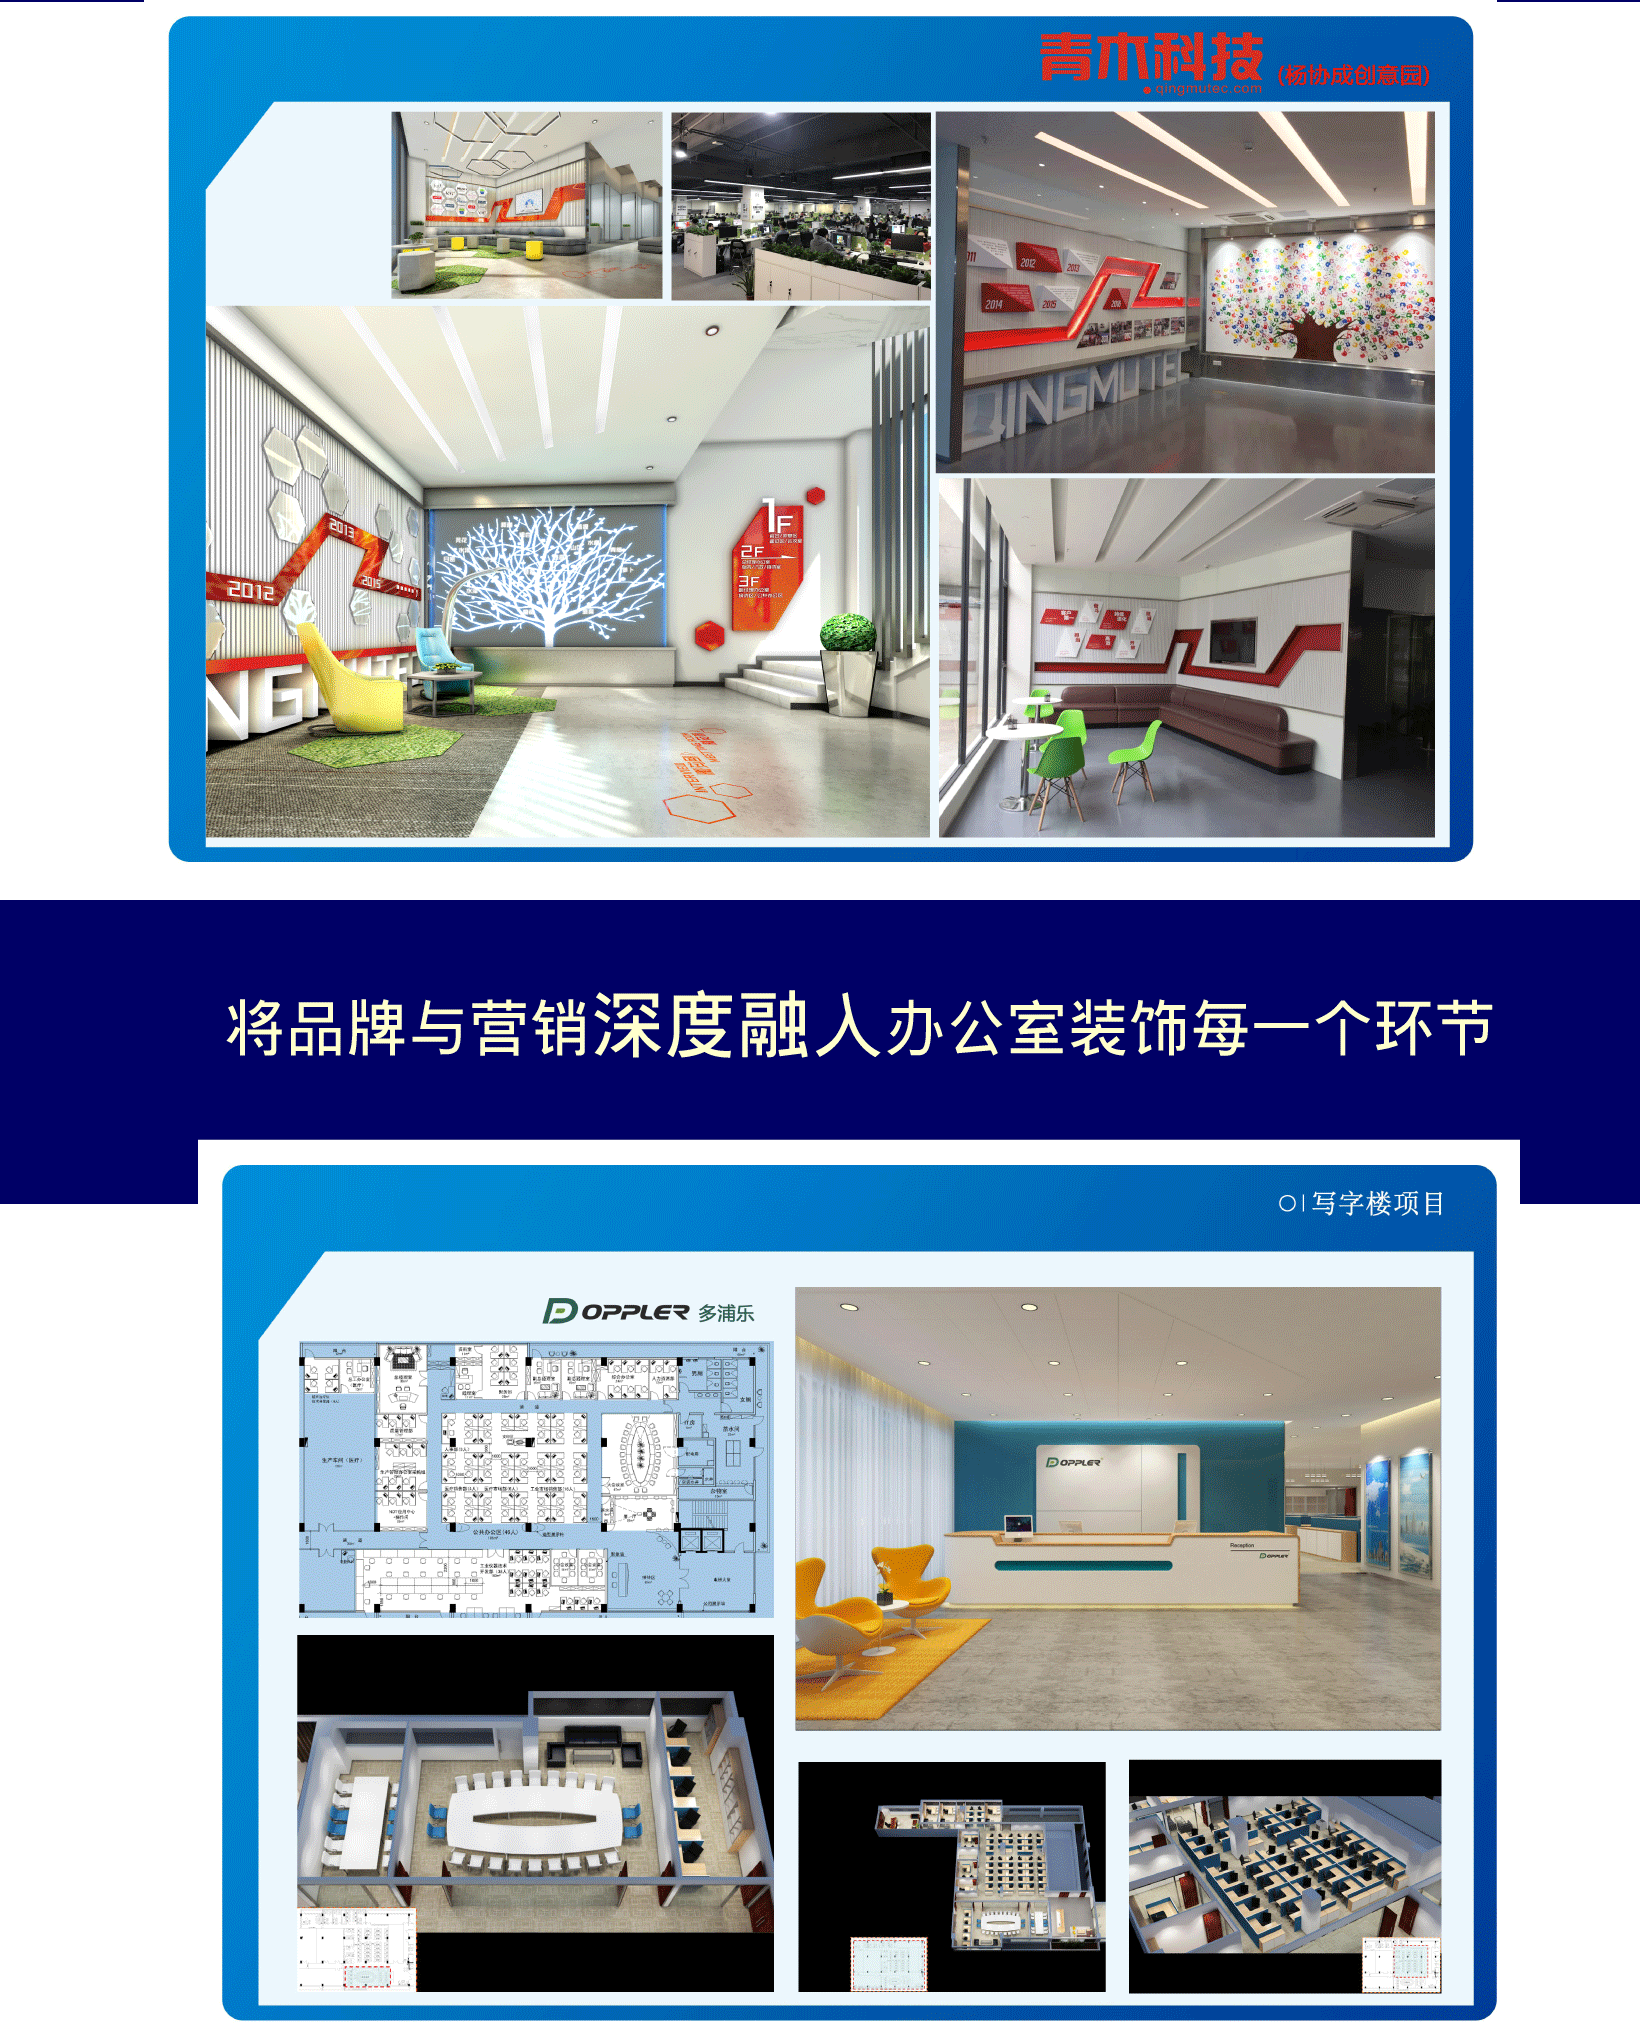 招财猫专业办公室装饰 
广州专业装饰装修办公室设计，科技空间